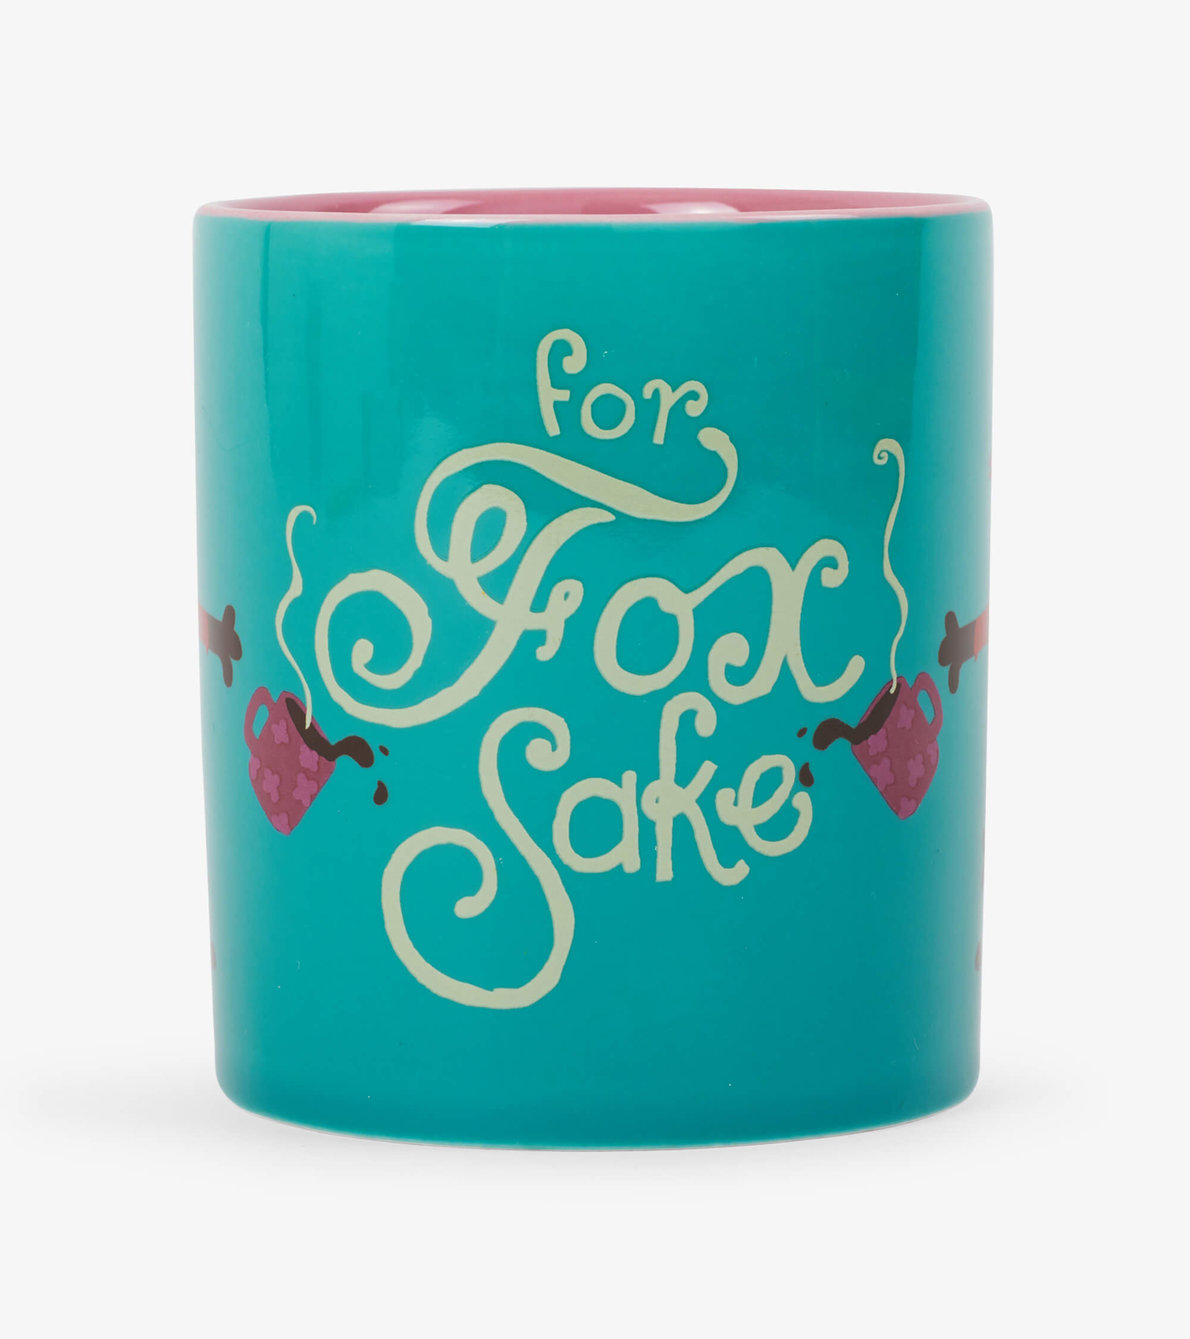 View larger image of For Fox Sake Ceramic Mug